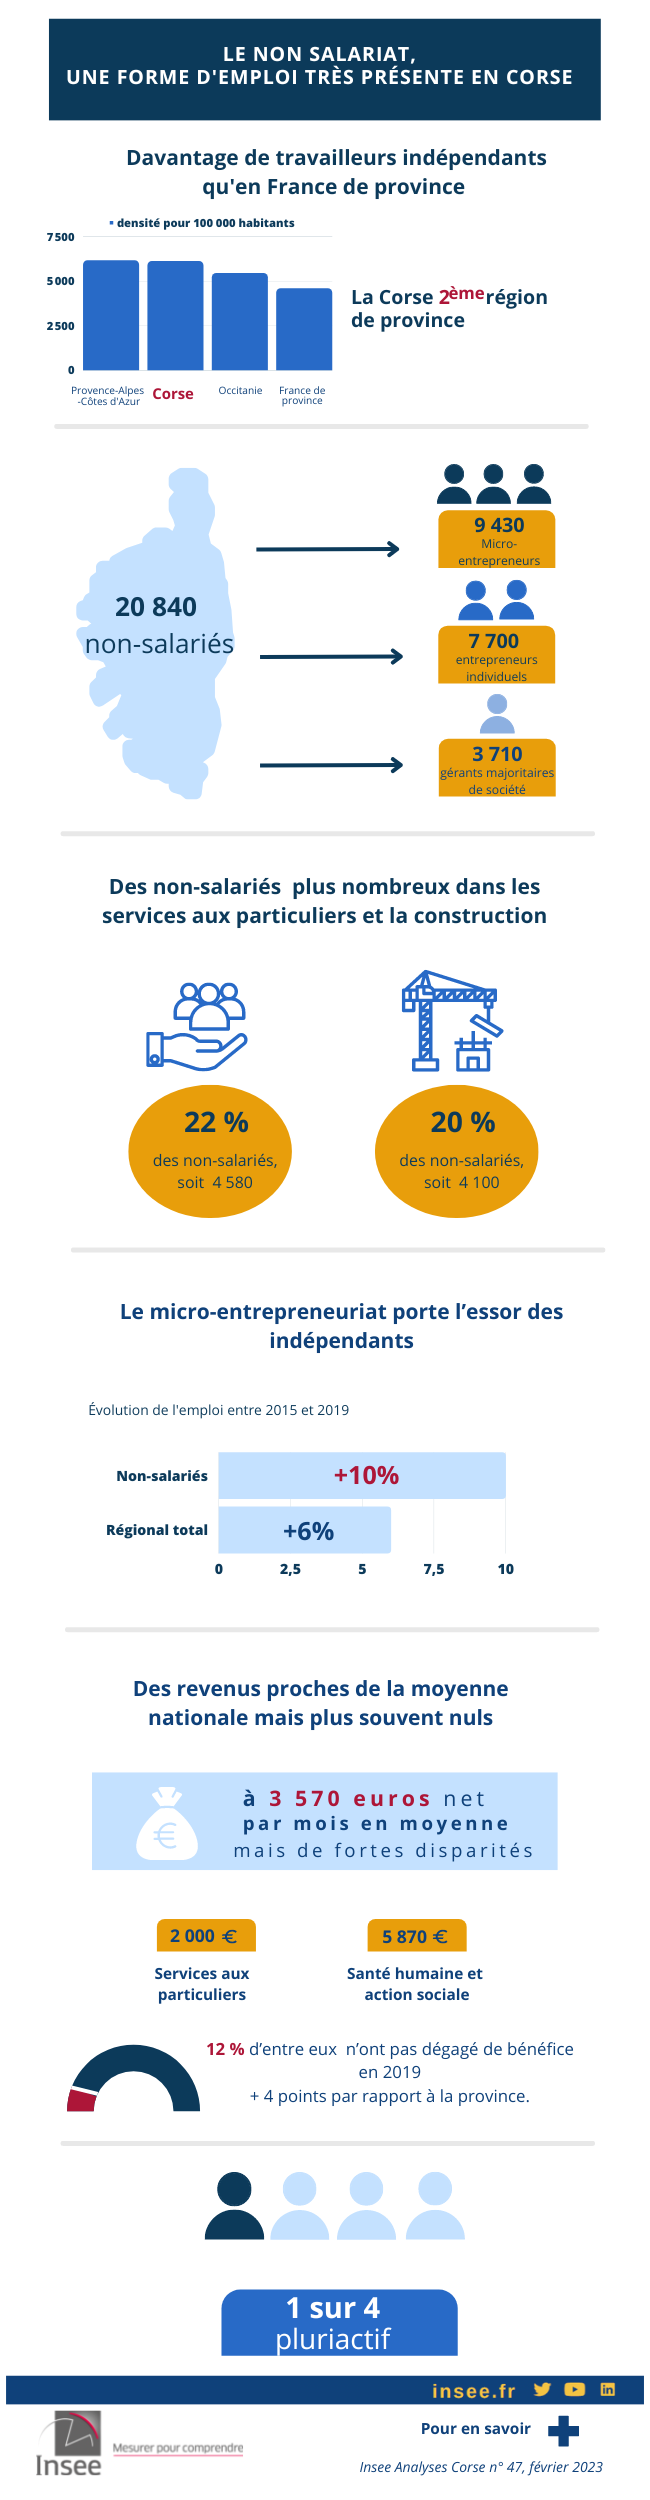 Infographie - Le non-salariat, une forme d’emploi très présente en Corse